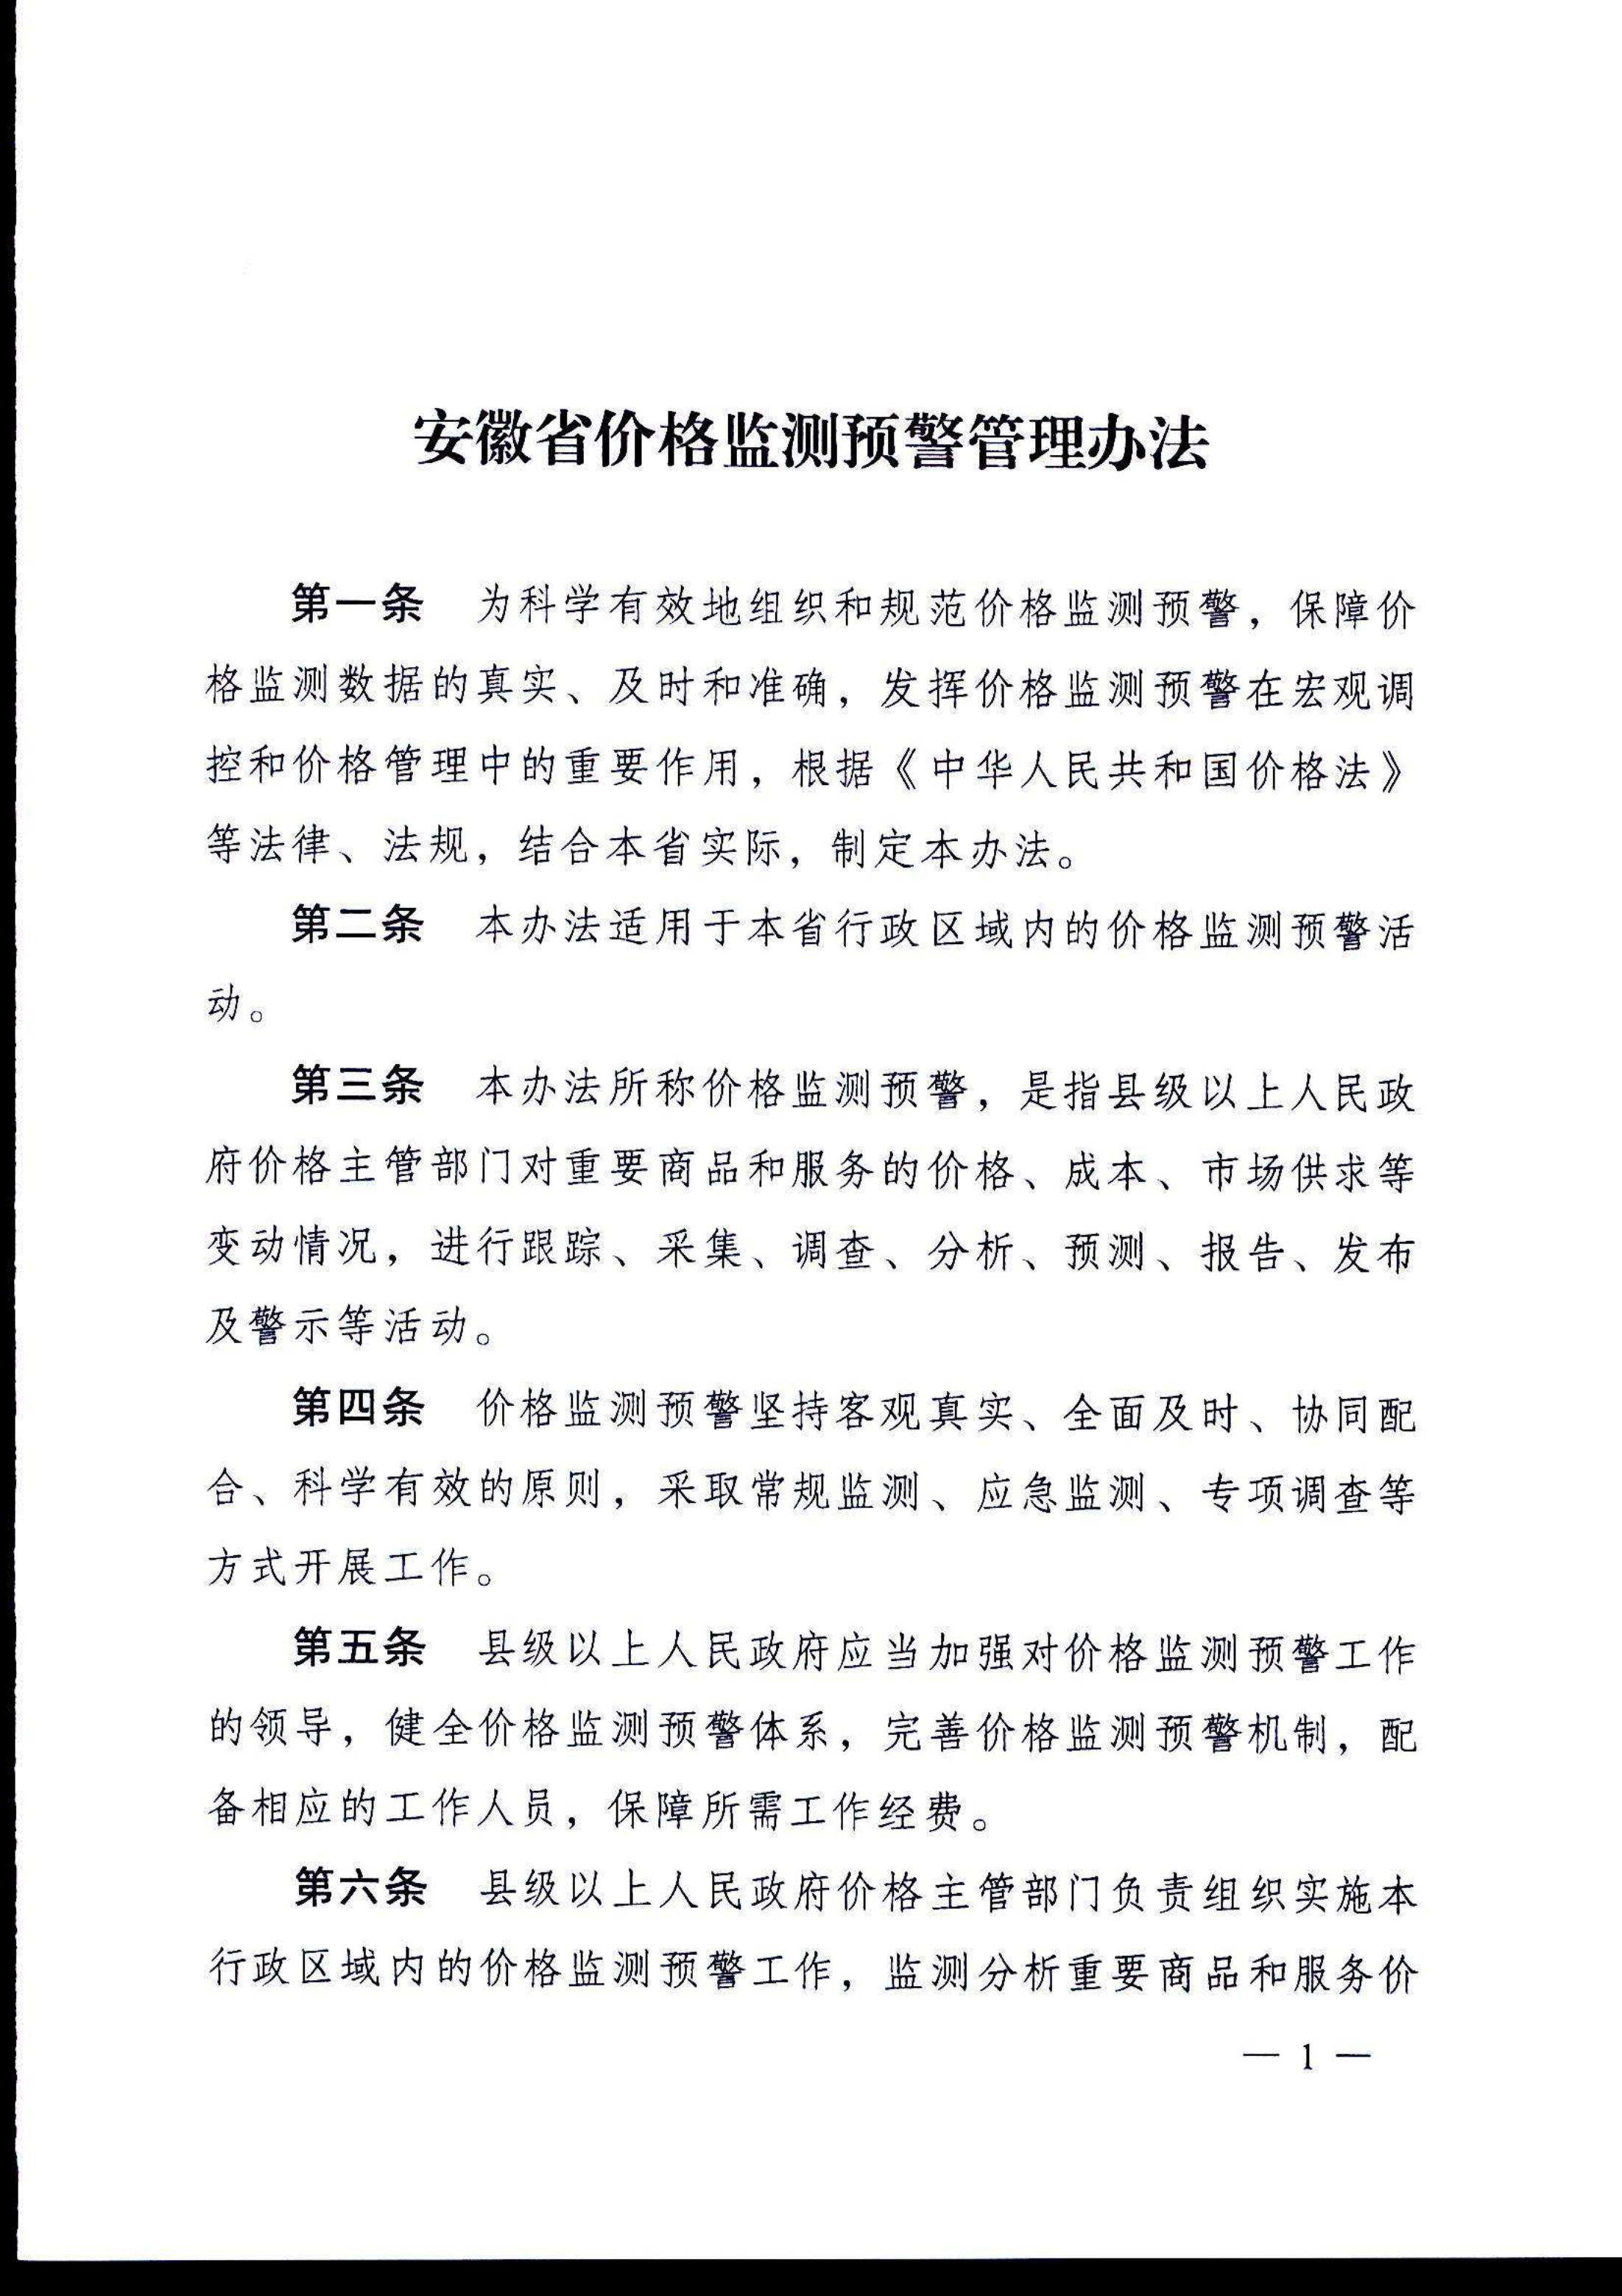 安徽省价格监测预警管理办法(1)(1)_2.png